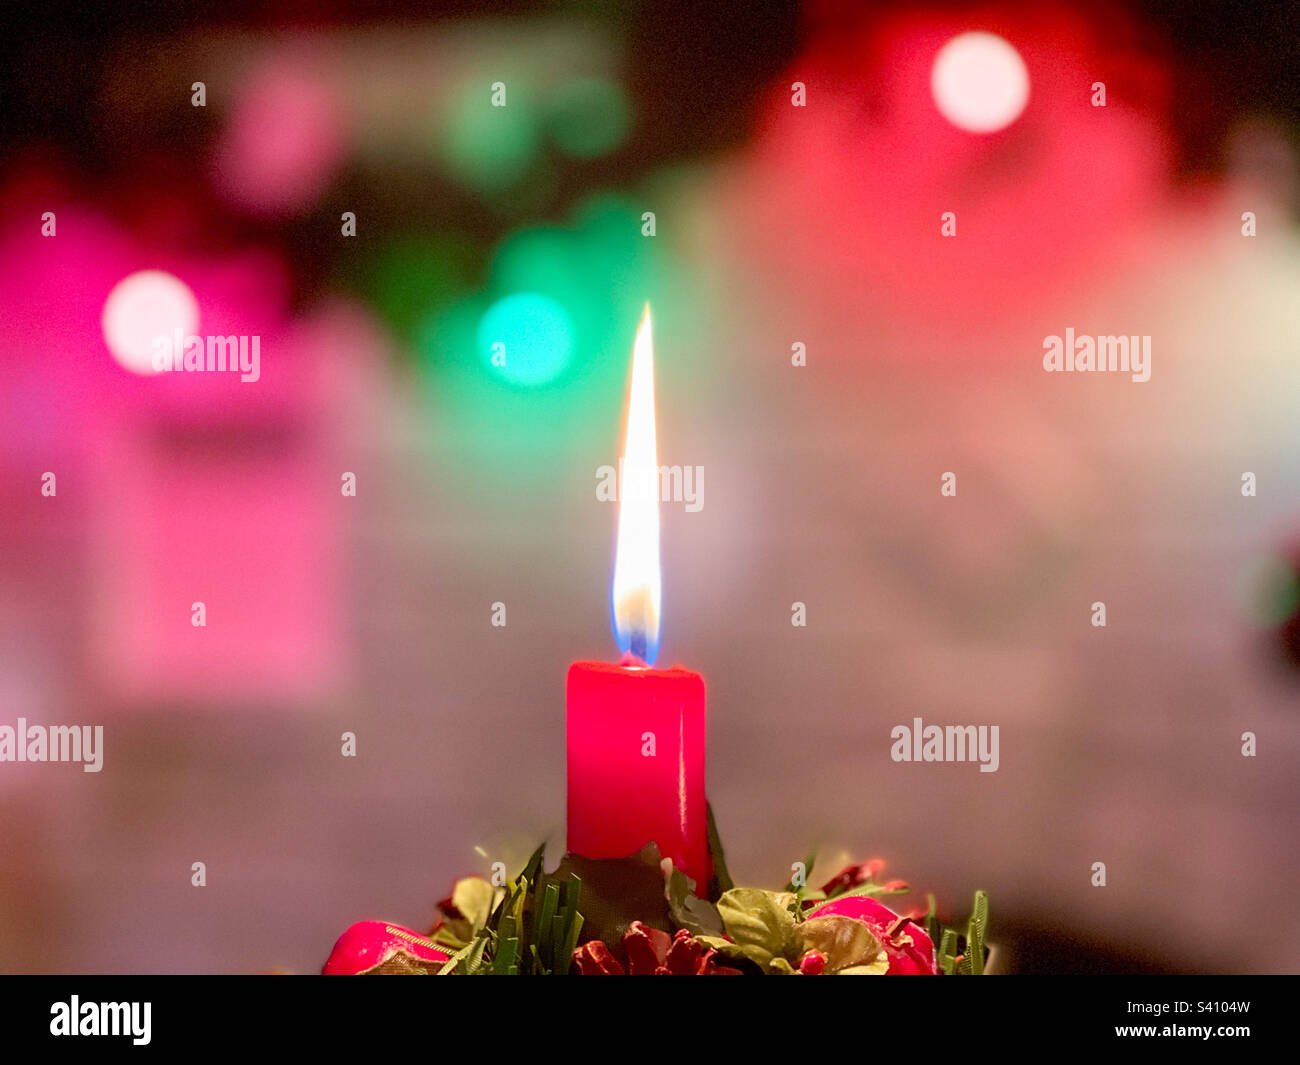 Candle & Christmas lights. Stock Photo